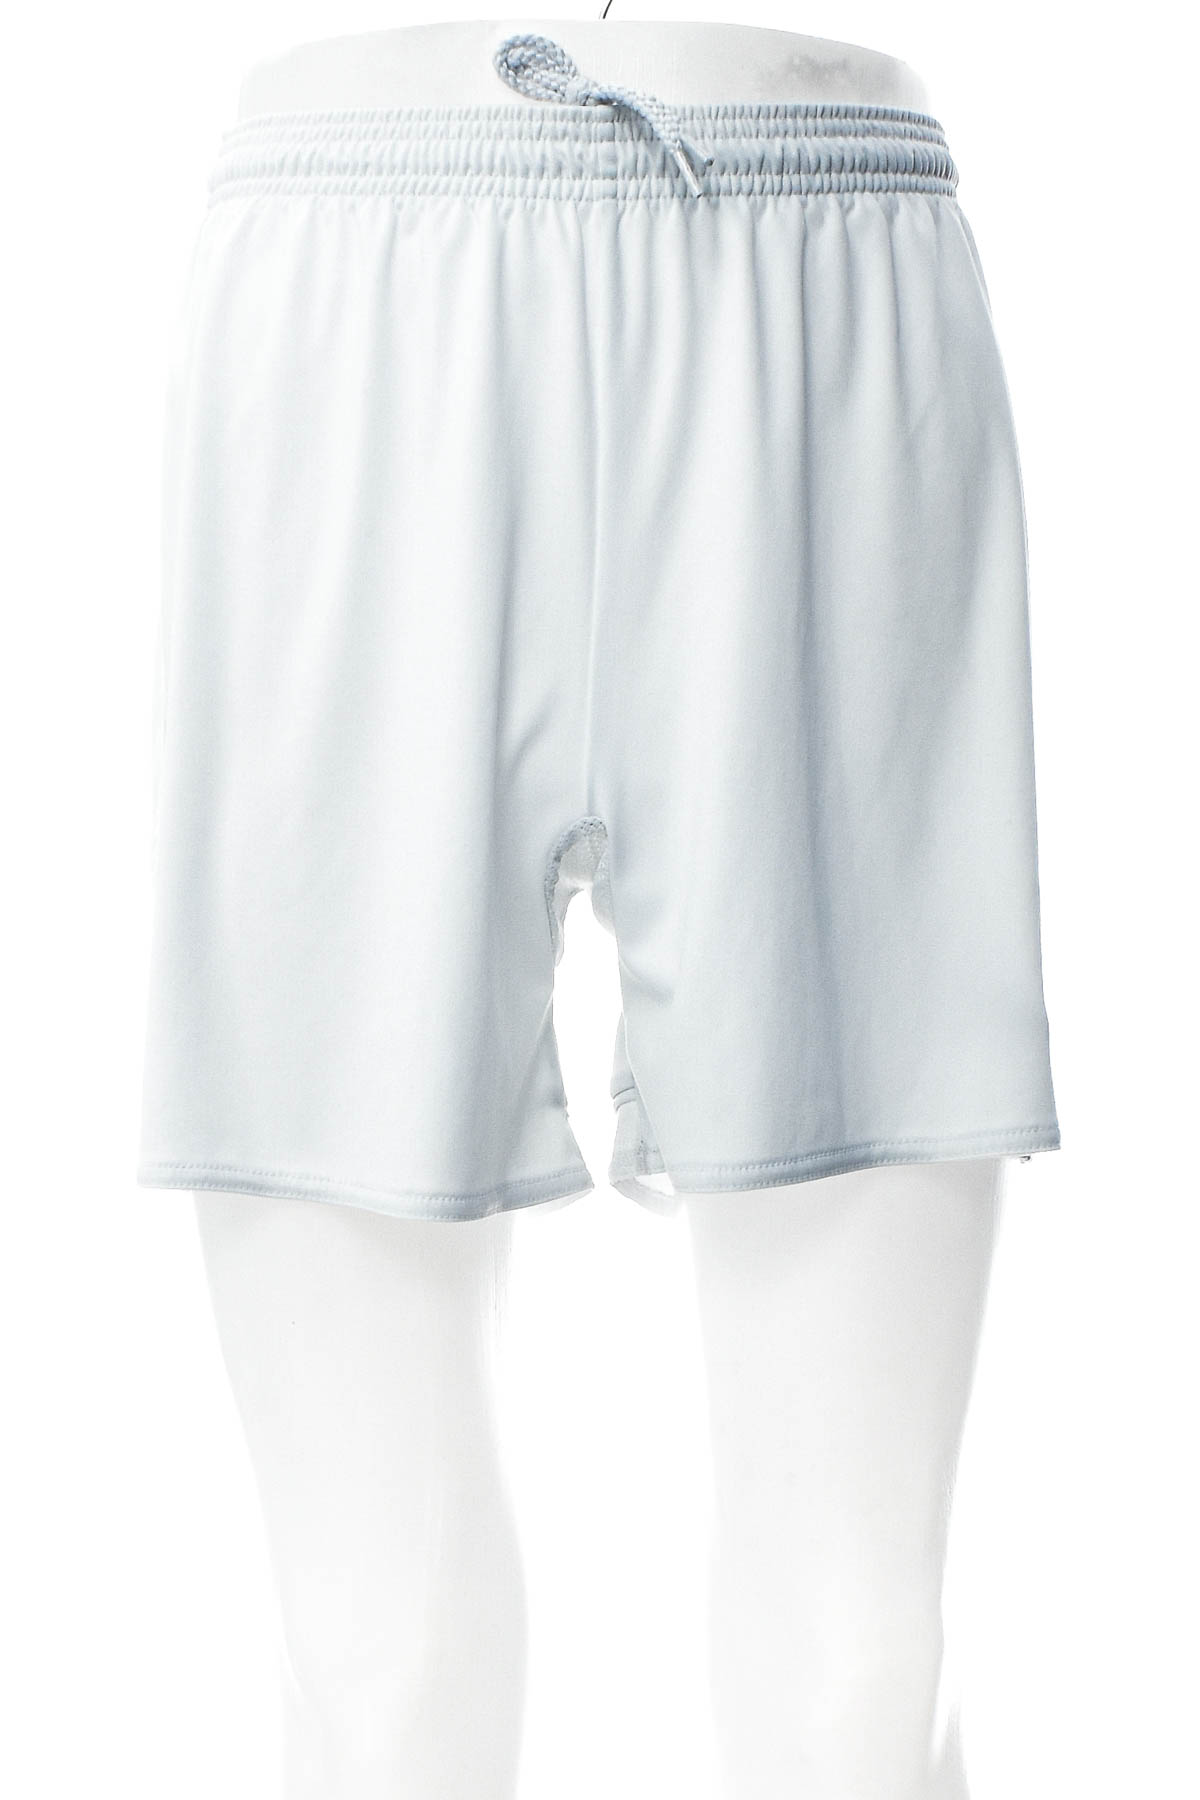 Krótkie spodnie damskie - Adidas - 0